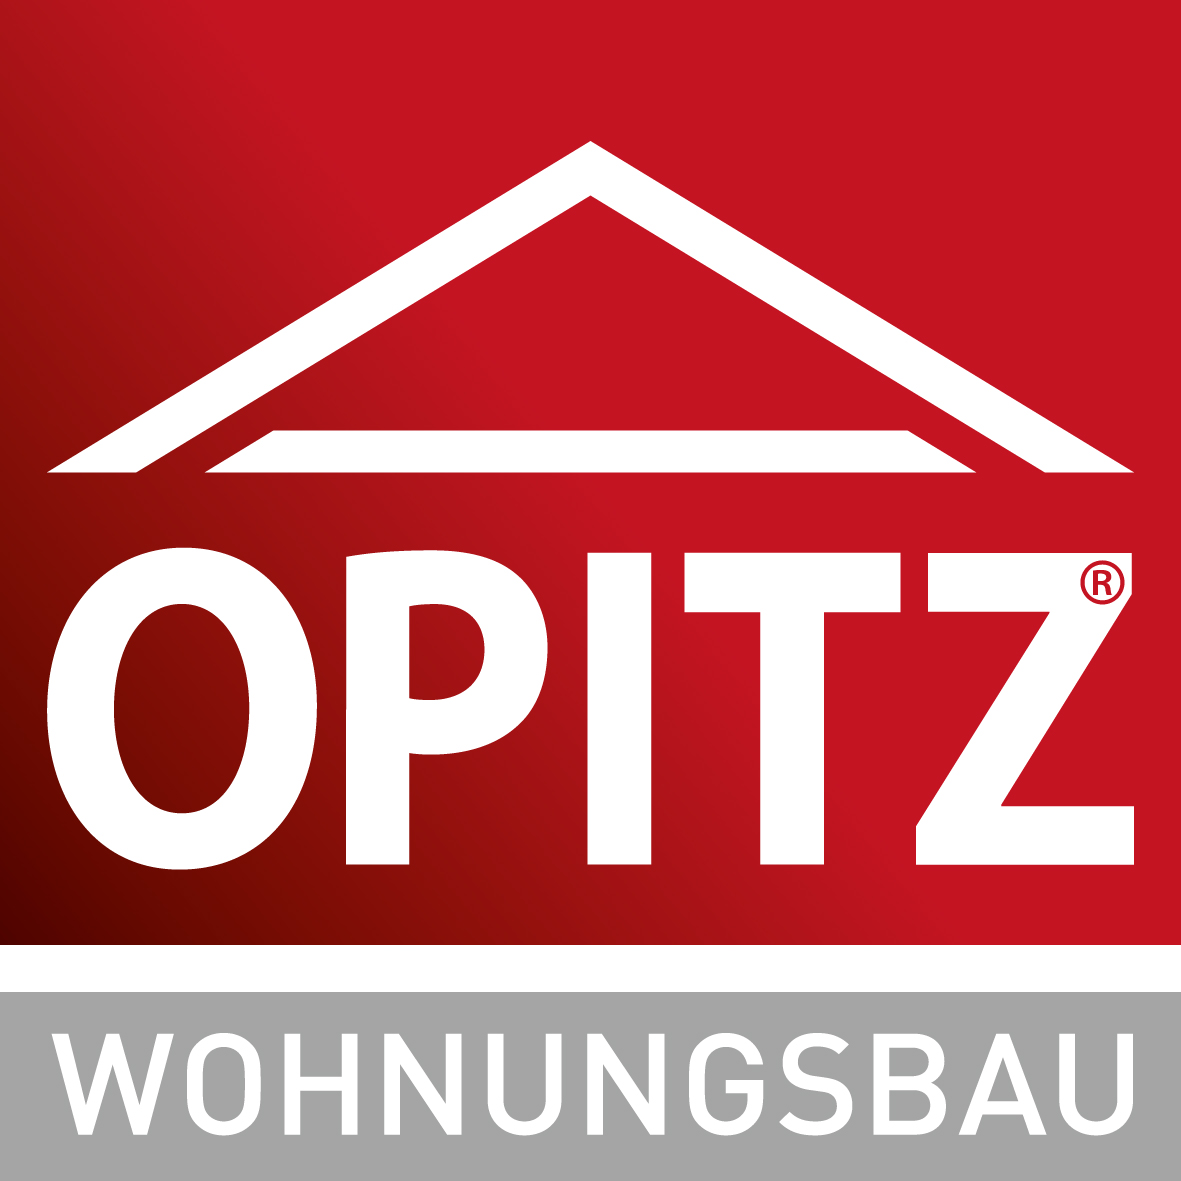 OPITZ - Wohnungsbau